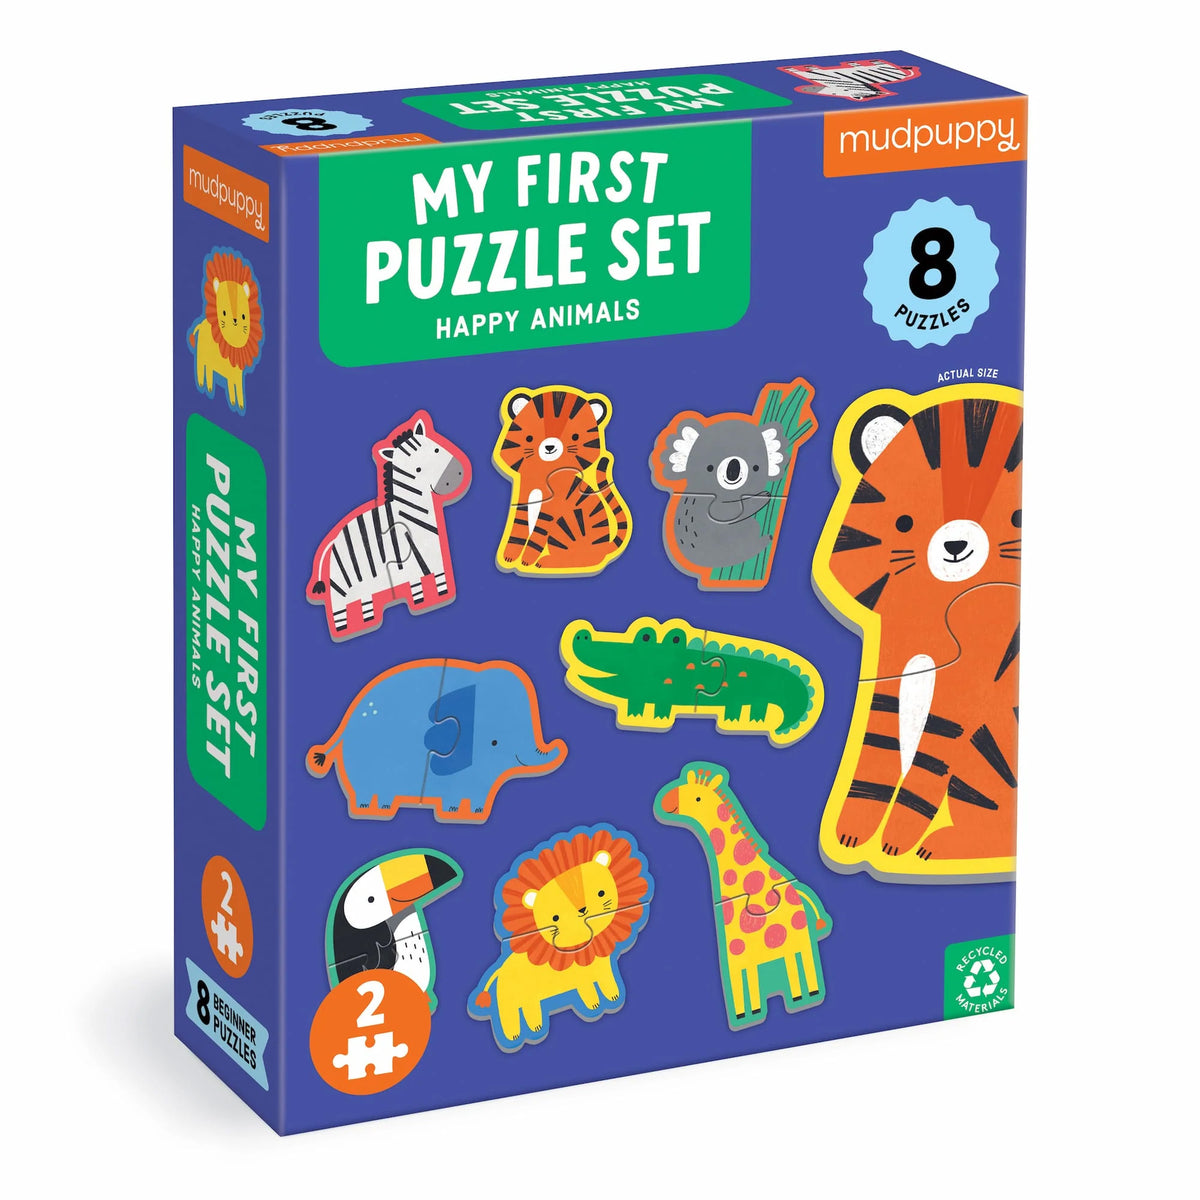 Mudpuppy My First Puzzle Set - Happy Animals